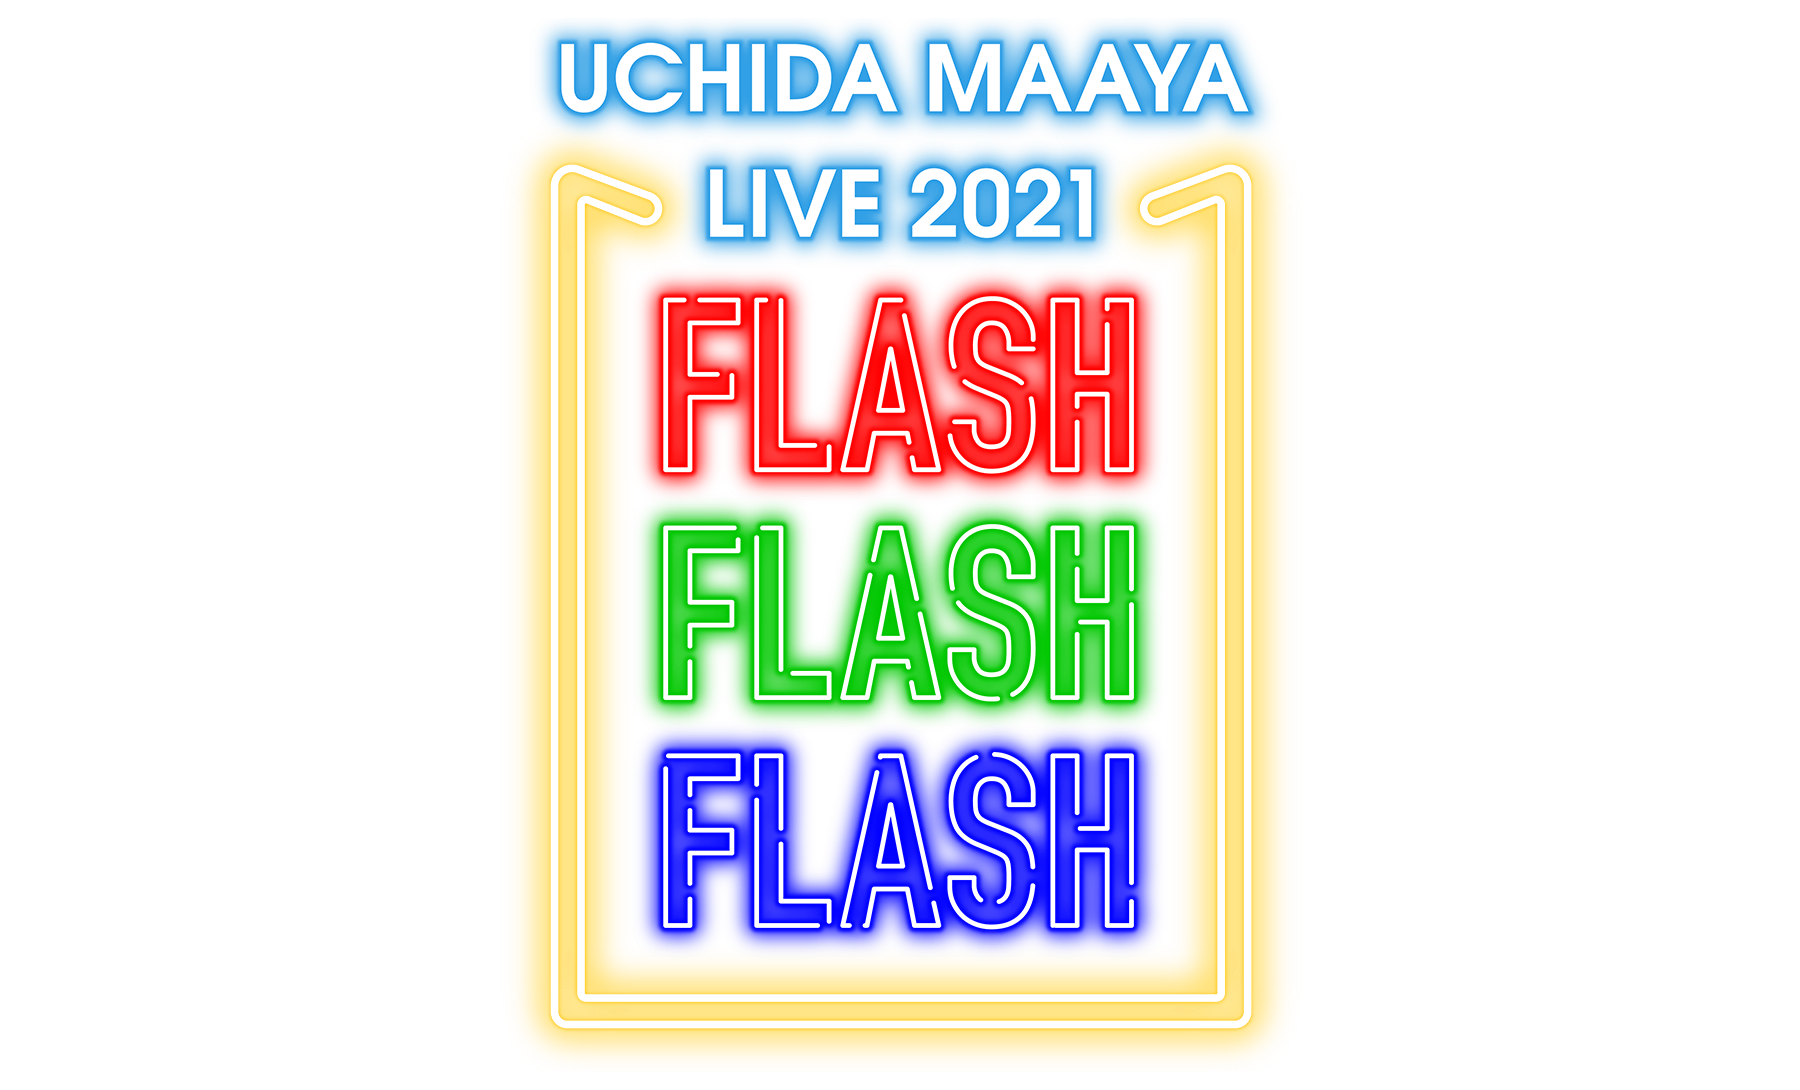 「UCHIDA MAAYA LIVE 2021 FLASH FLASH FLASH」